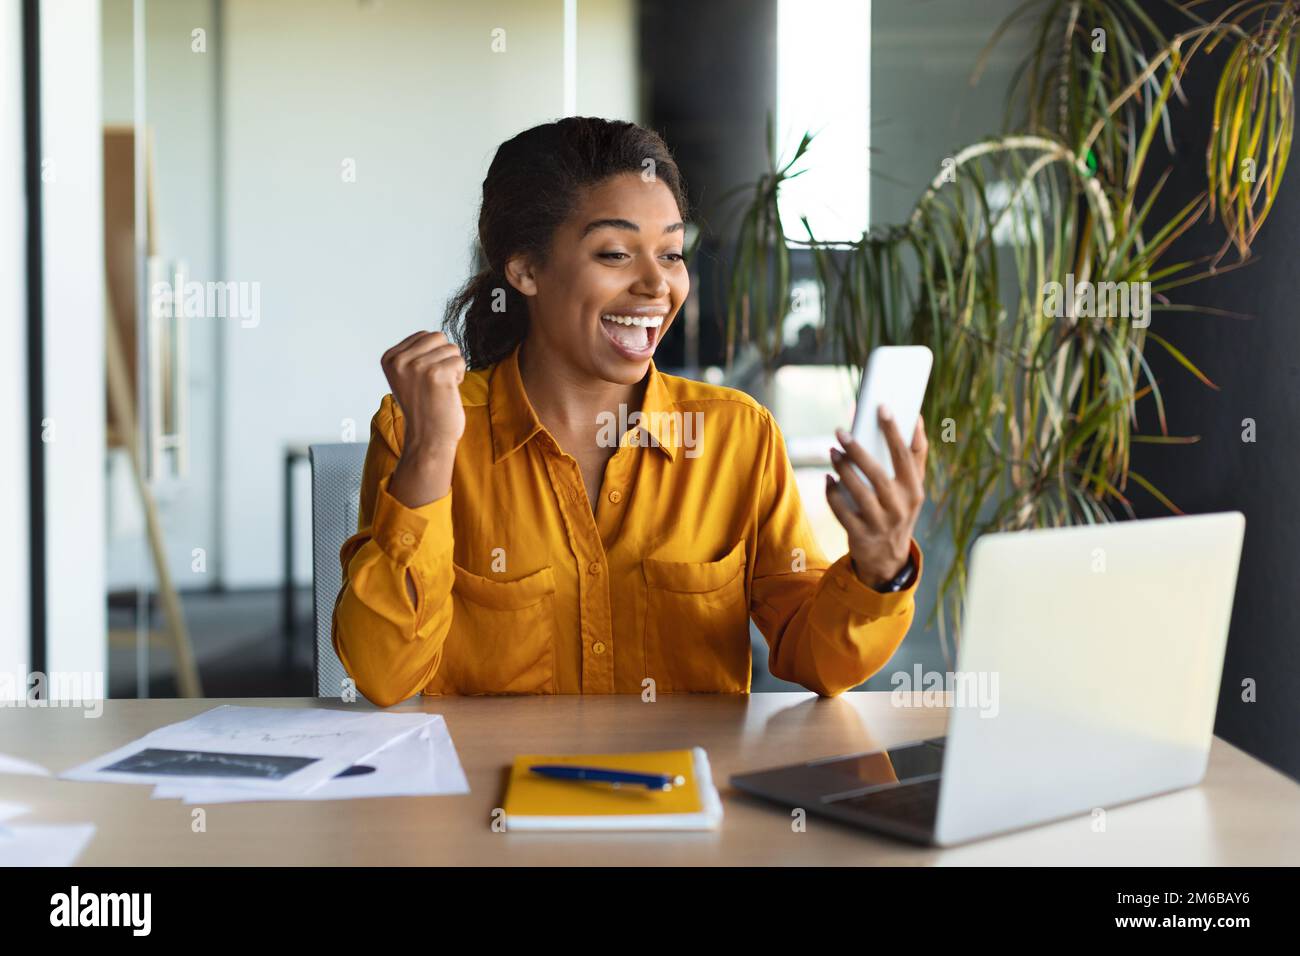 Femme noire excitée lisant un bon message sur un smartphone, travaillant sur un ordinateur portable dans un intérieur de bureau moderne Banque D'Images